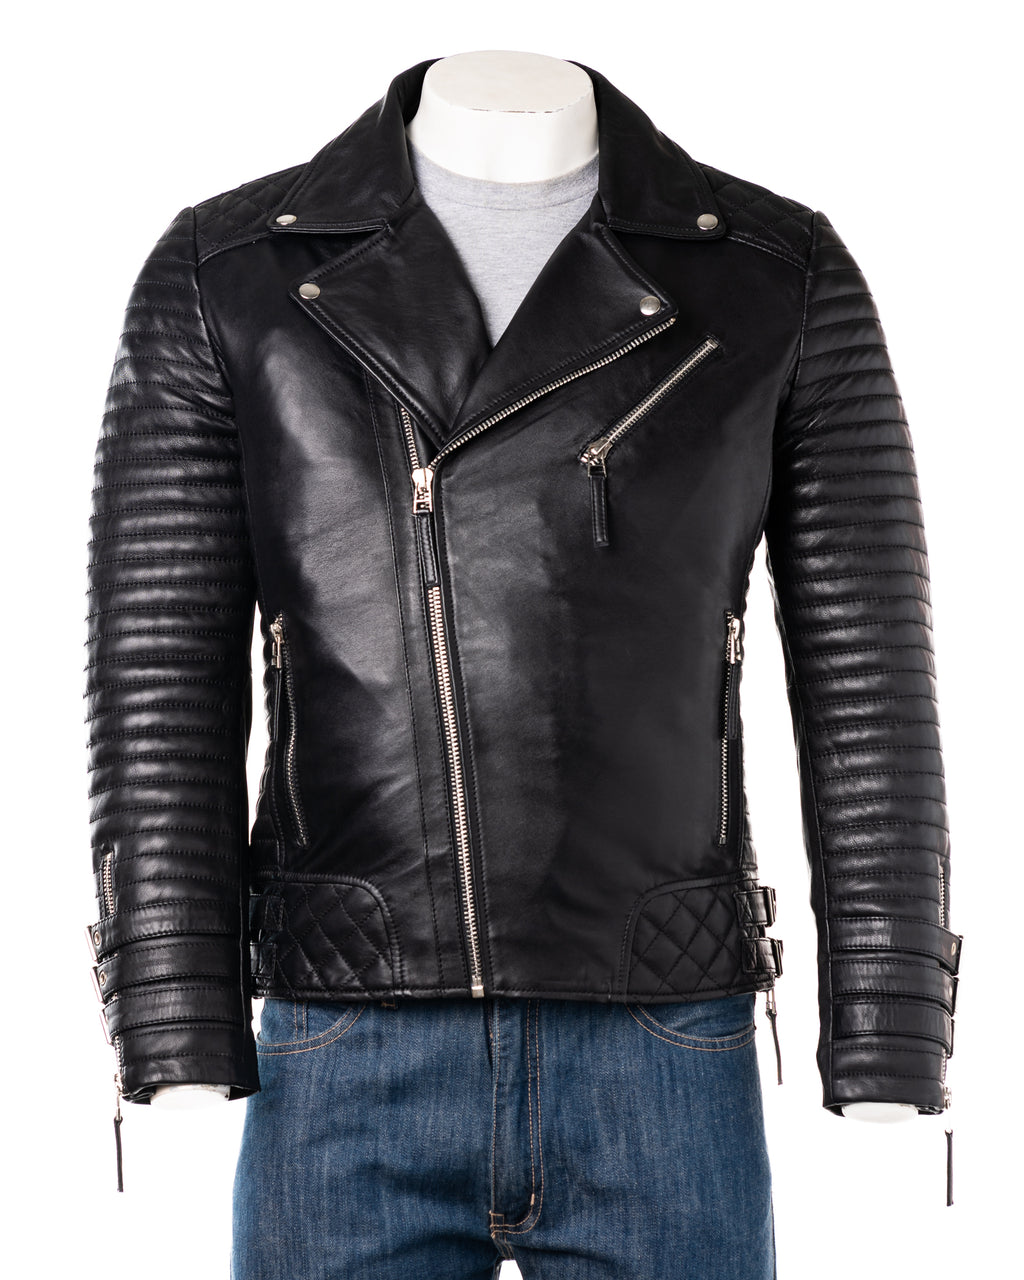 Men's Black Designer Style Leather Biker Jacket: Bruno